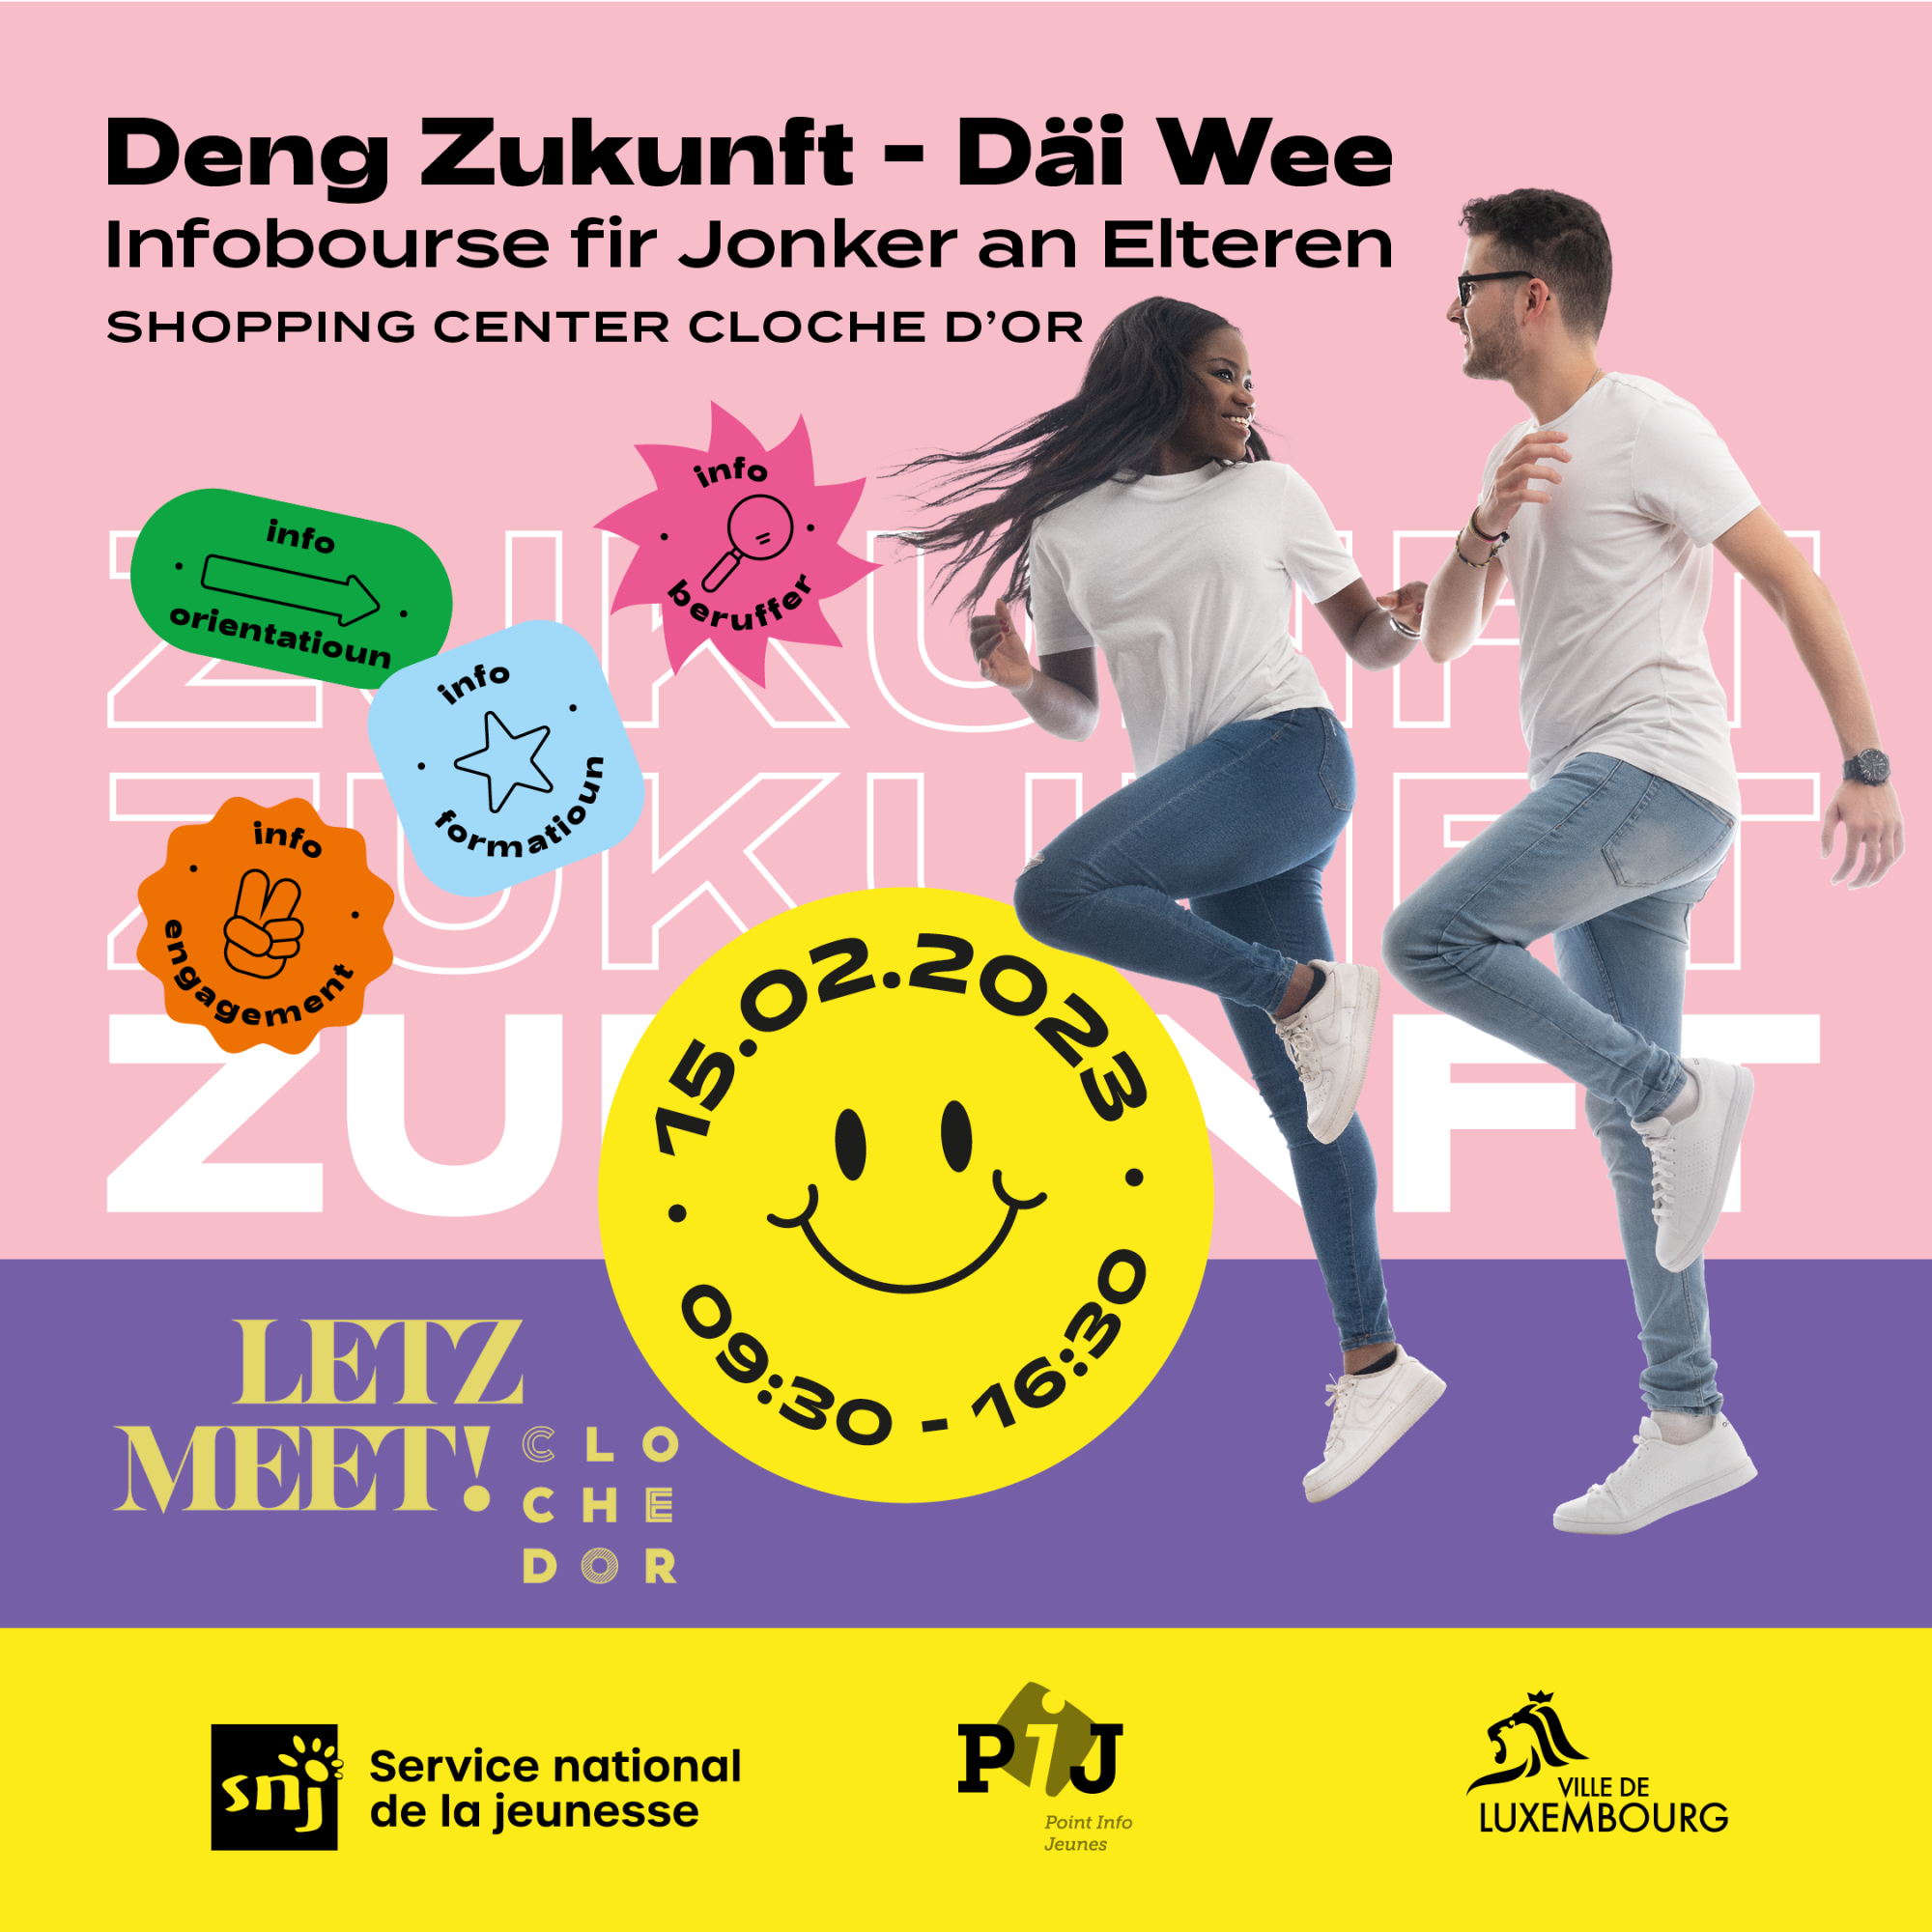 7 ème édition "Deng Zukunft, Däi Wee !" à La Cloche d'Or Shopping Center